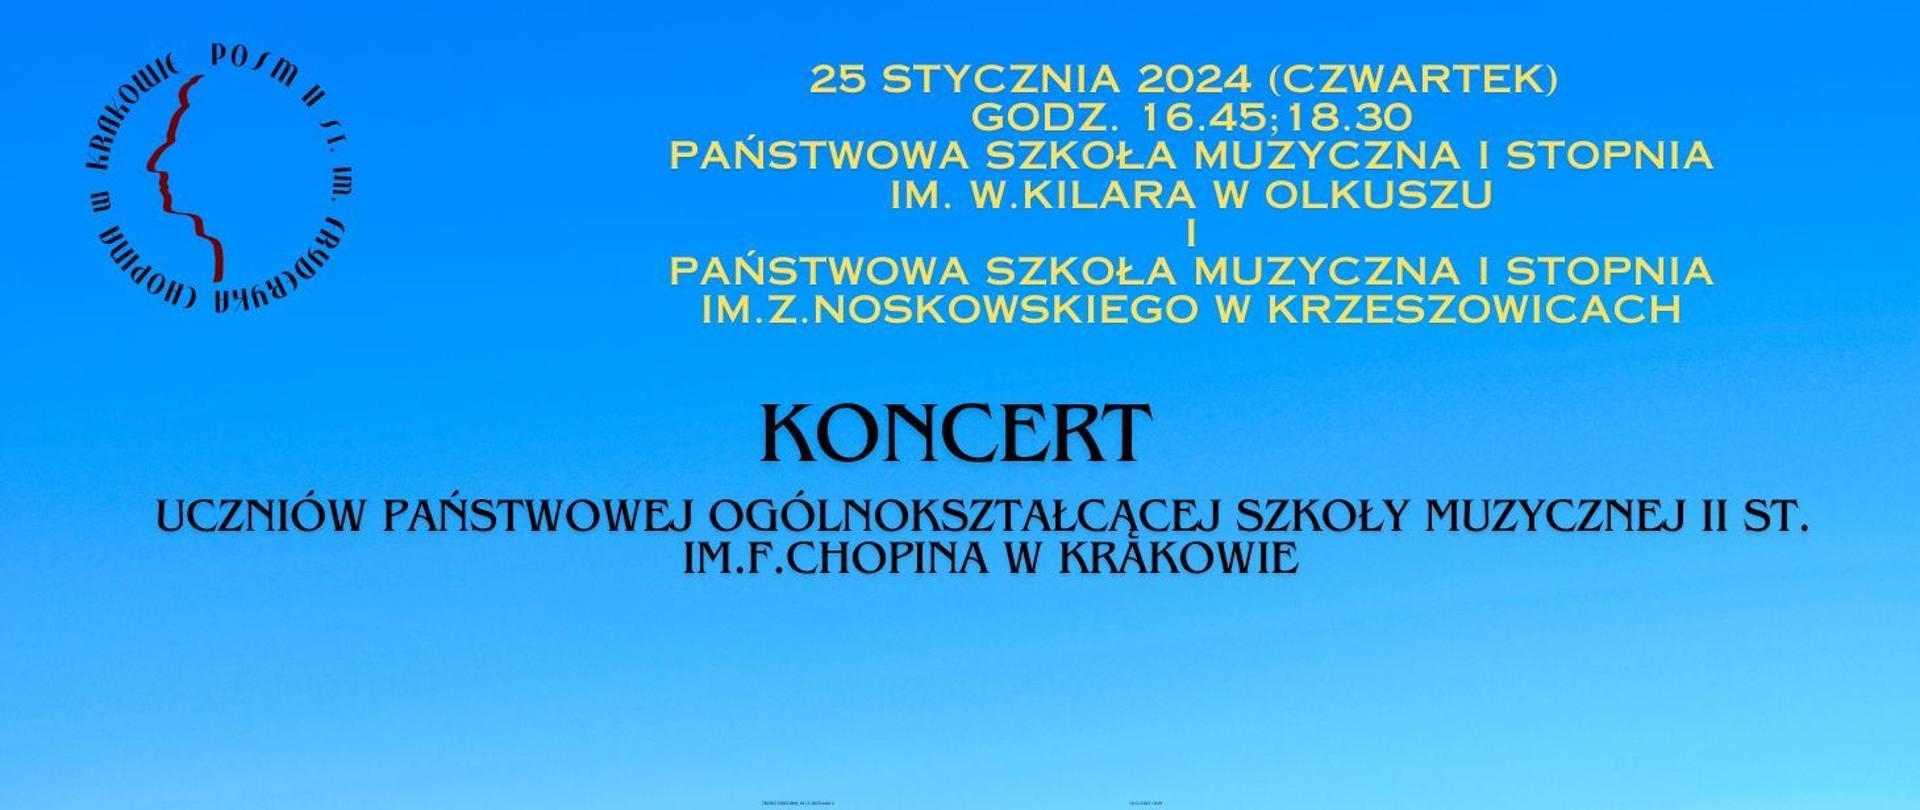 Baner, niebieskie tło, w lewym górnym rogu logotyp szkoły; tekst zapowiada dwa koncerty uczniów naszej szkoły w Olkuszu oraz w Krzeszowicach 25 stycznia 2024 r.